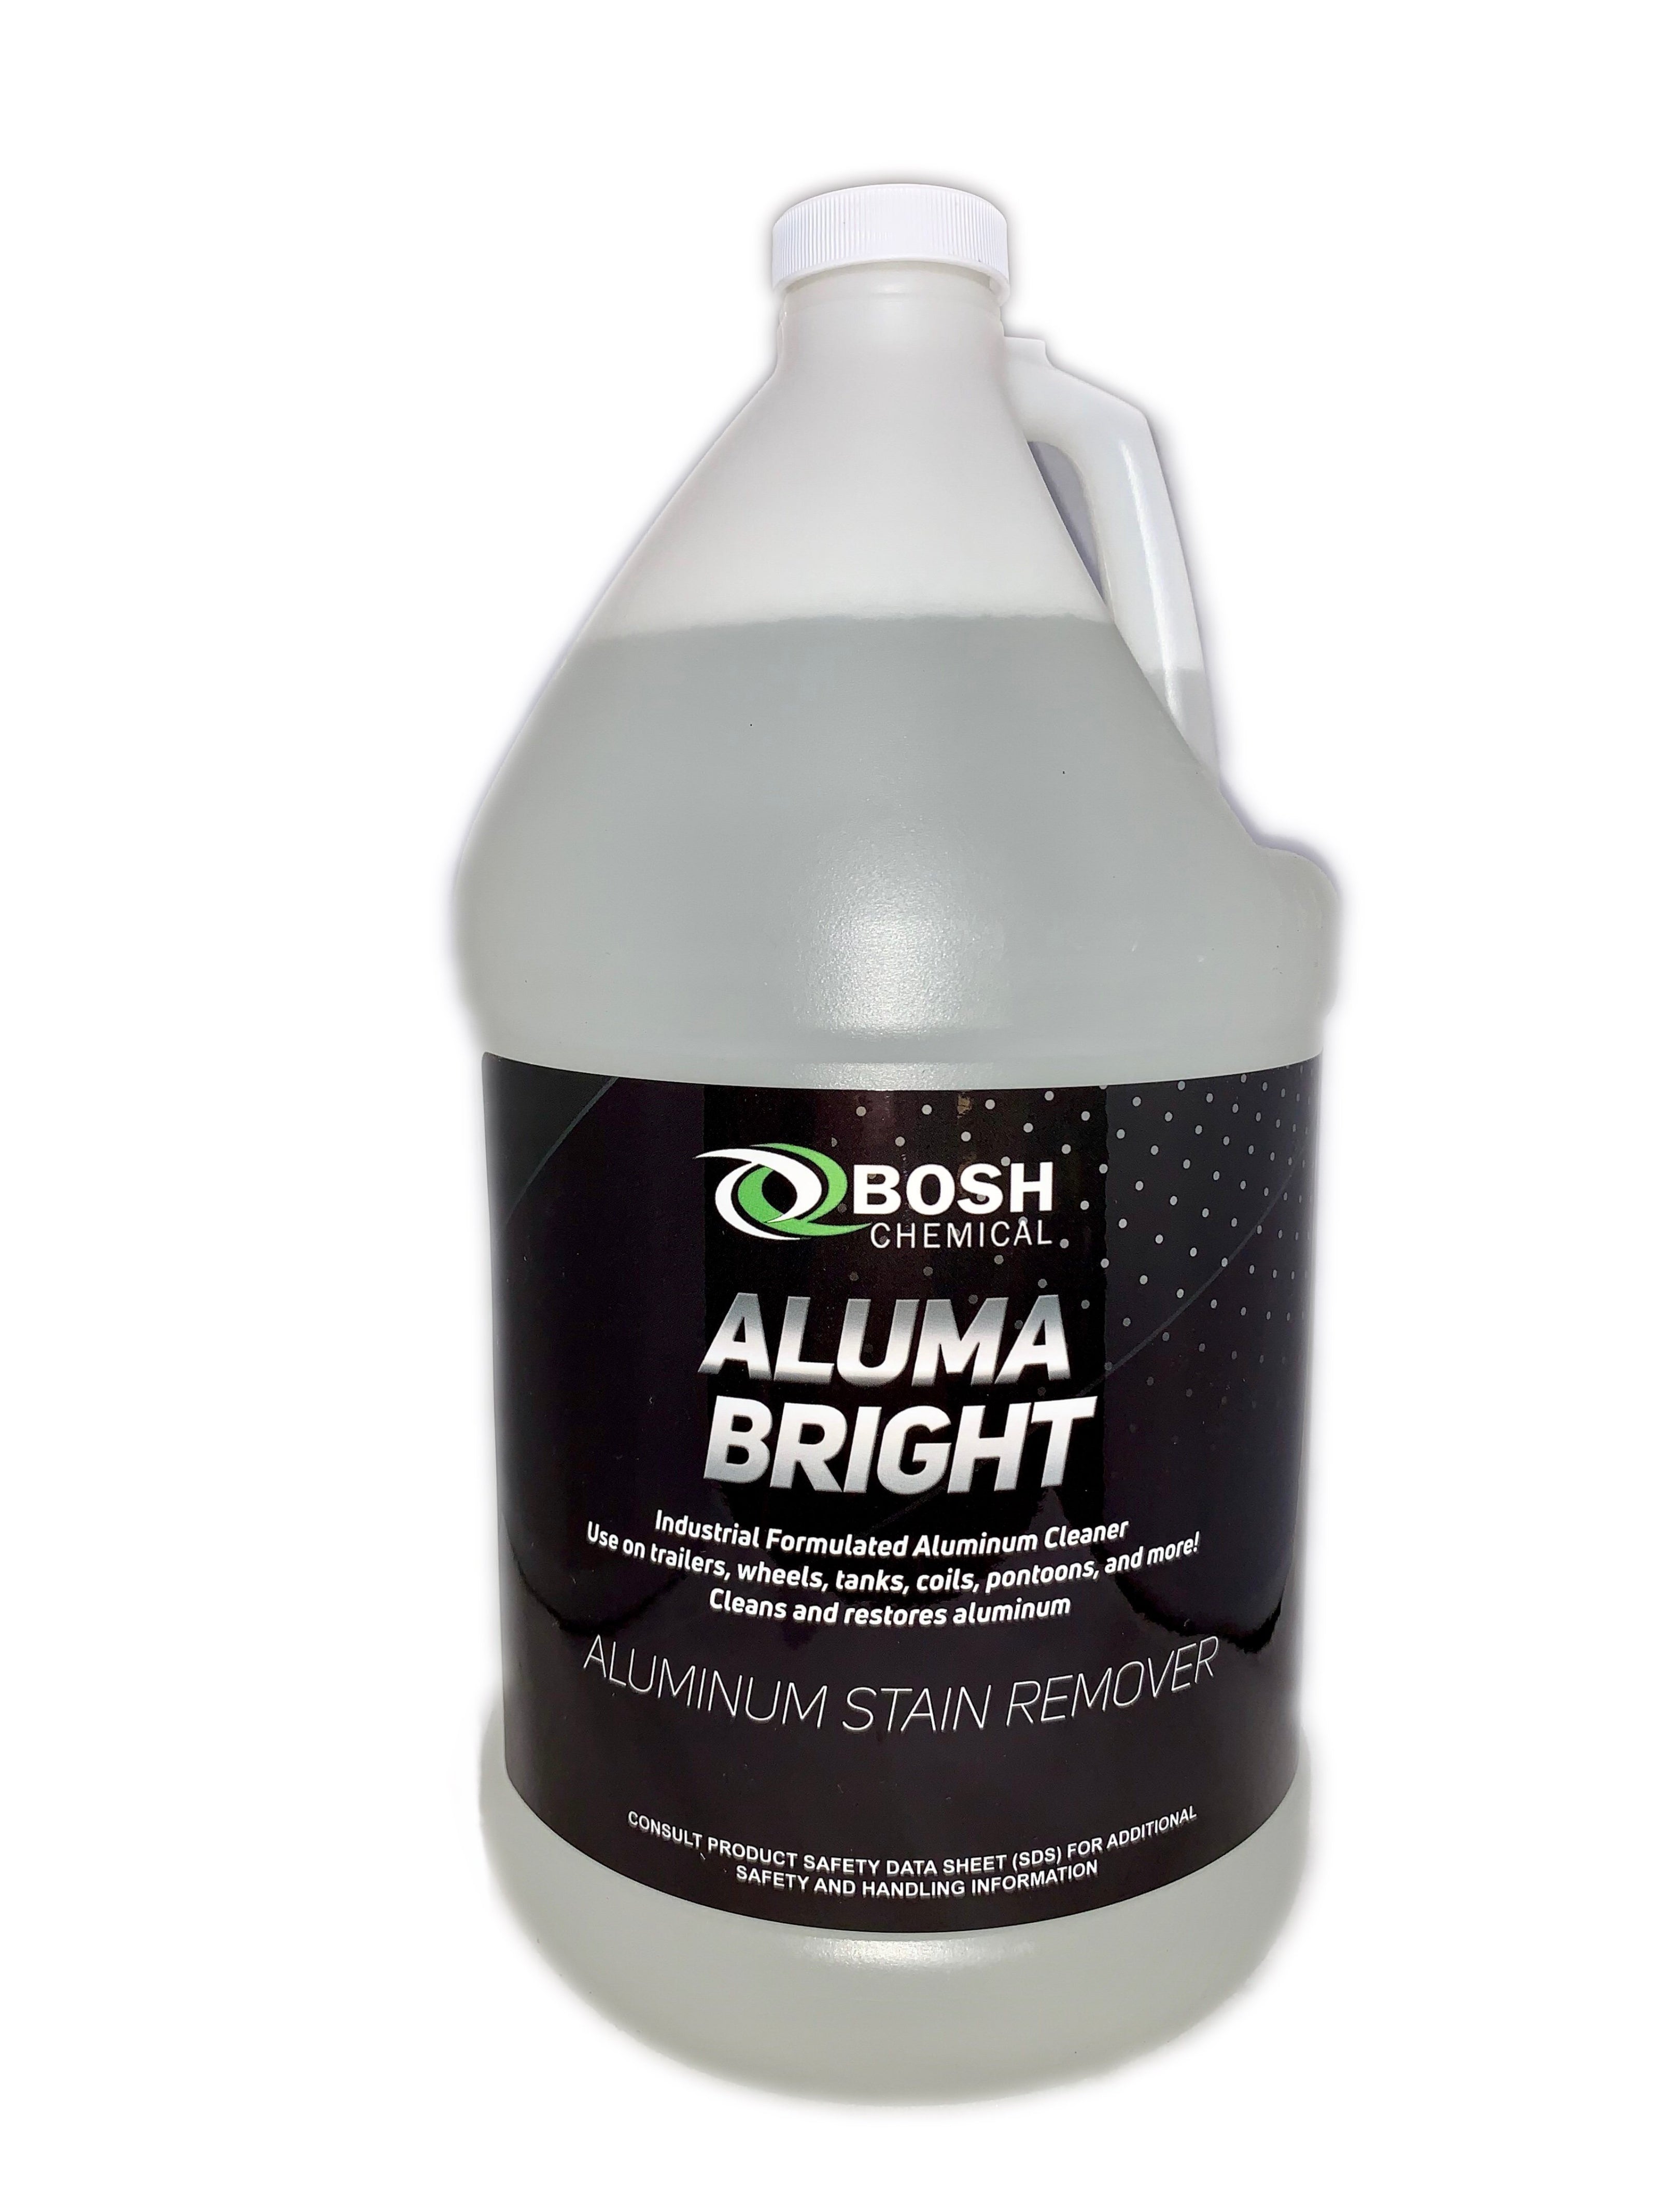 ATHEA® Aluminum Cleaner and Brightener